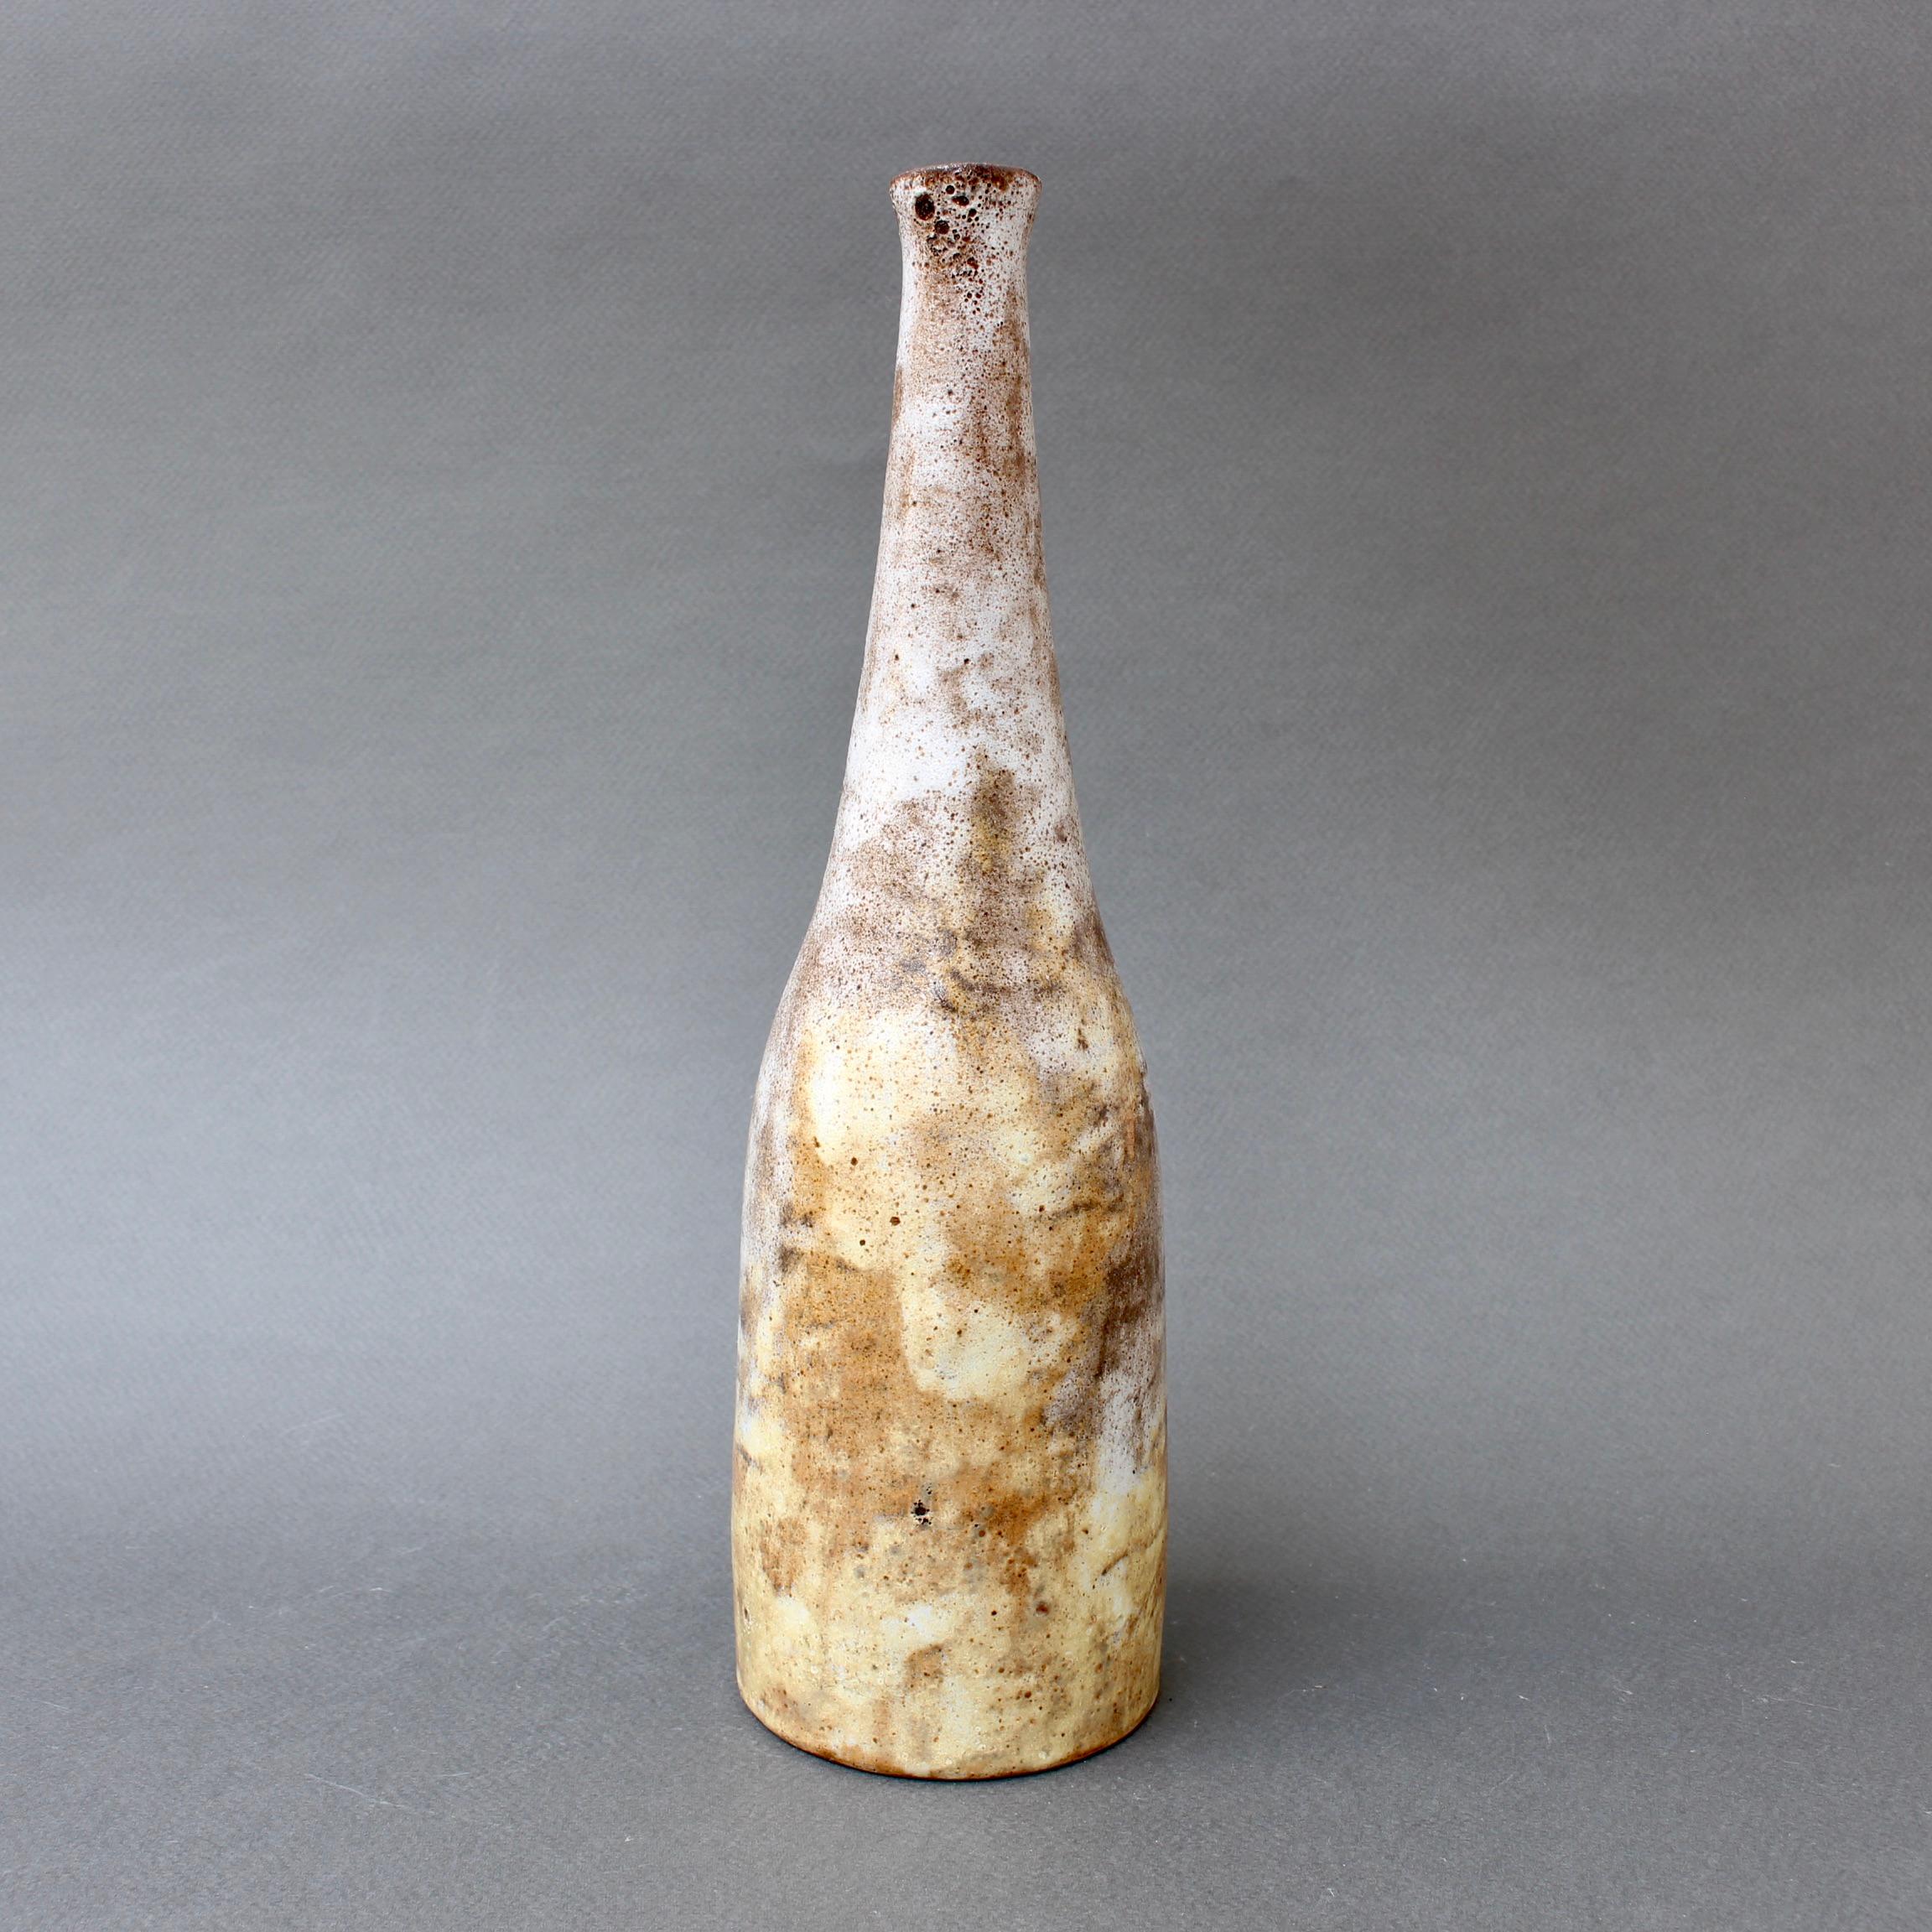 Une bouteille / vase en céramique du milieu du siècle par Alexandre Kostanda (circa 1960s). Cet étonnant récipient asymétrique en faïence présente un aspect brumeux avec des tons terreux de brun, de beige et de jaune délicat. Tactiles et